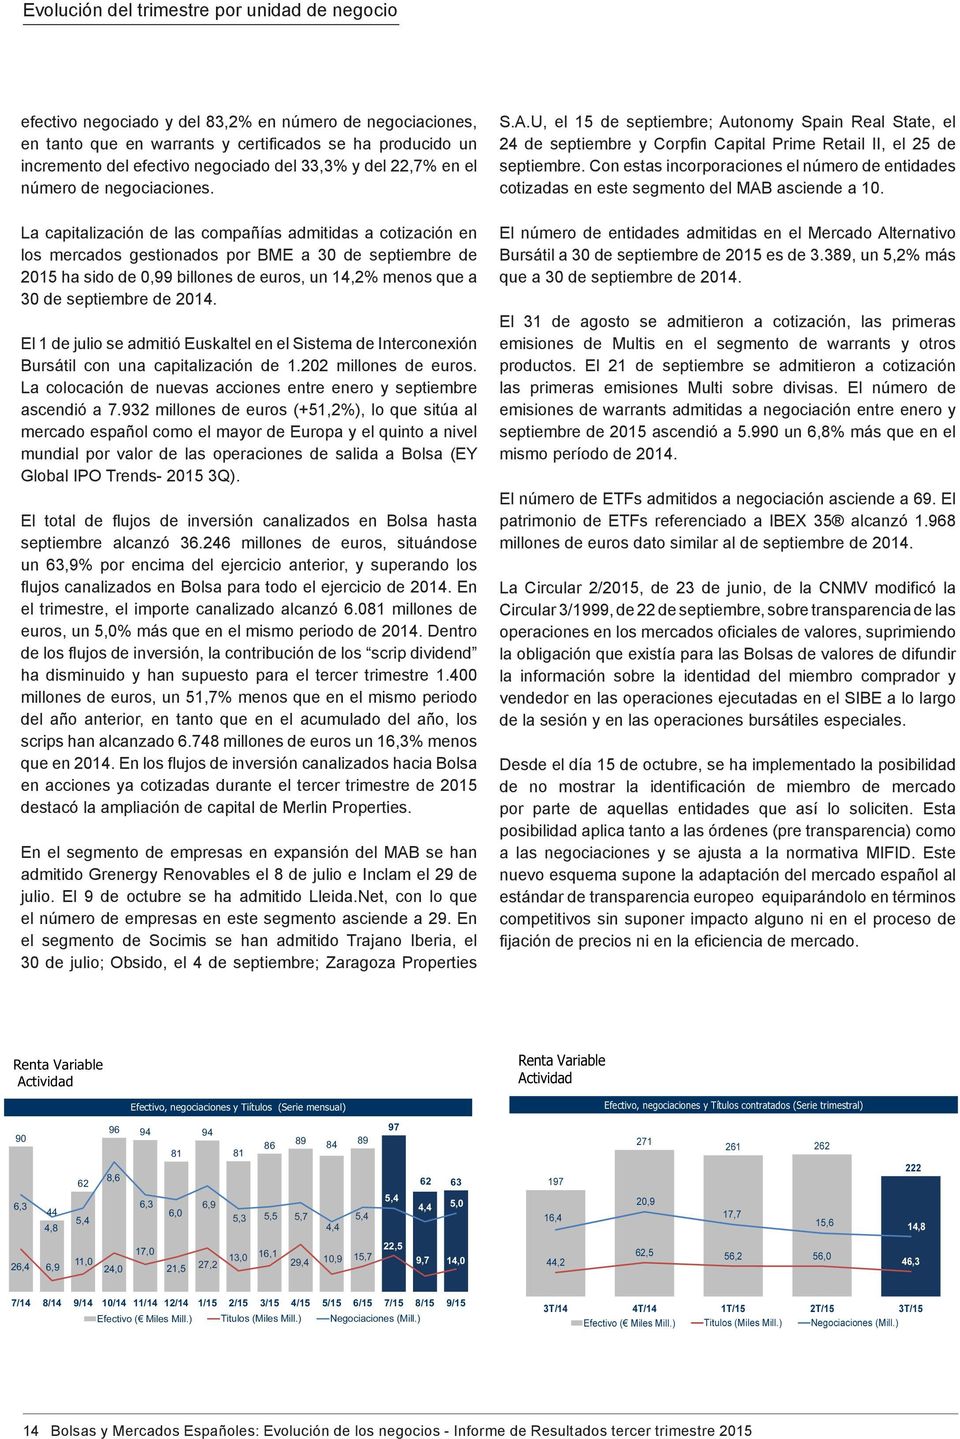 La capitalización de las compañías admitidas a cotización en los mercados gestionados por BME a 30 de septiembre de 2015 ha sido de 0,99 billones de euros, un 14,2% menos que a 30 de septiembre de